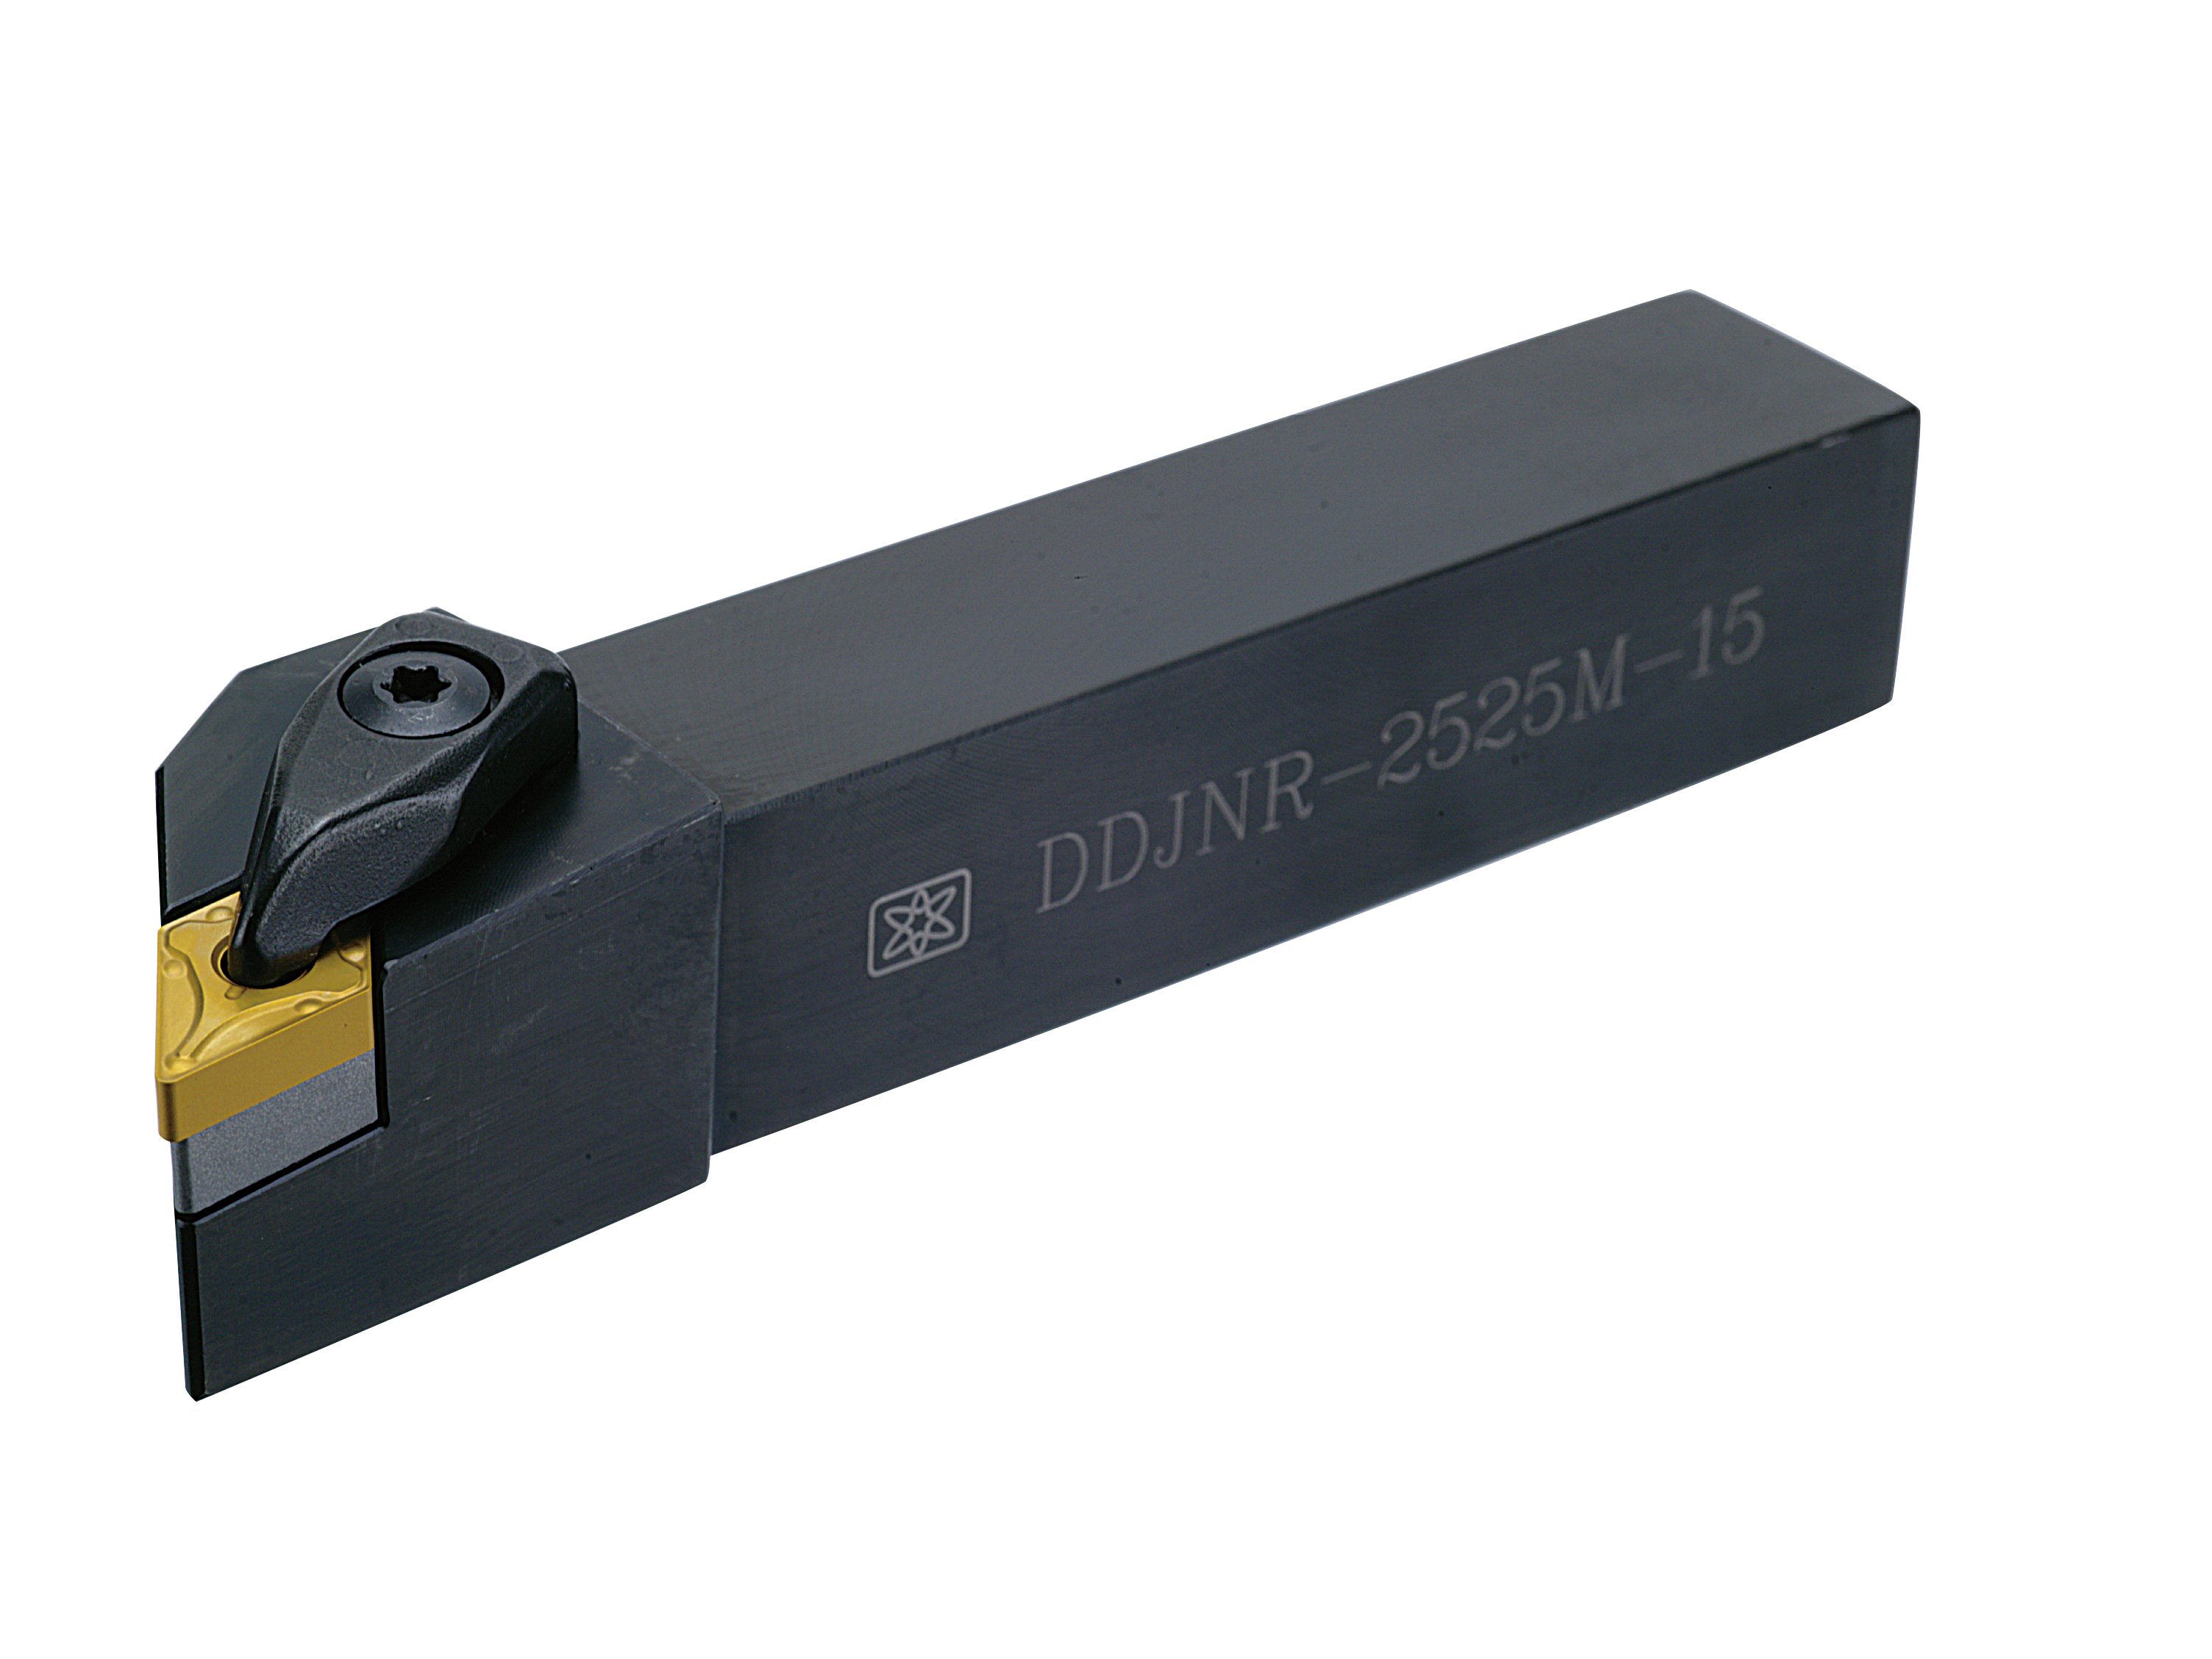 DDJNR (DNMG1504 / DNMG1506) External Turning Tool Holder